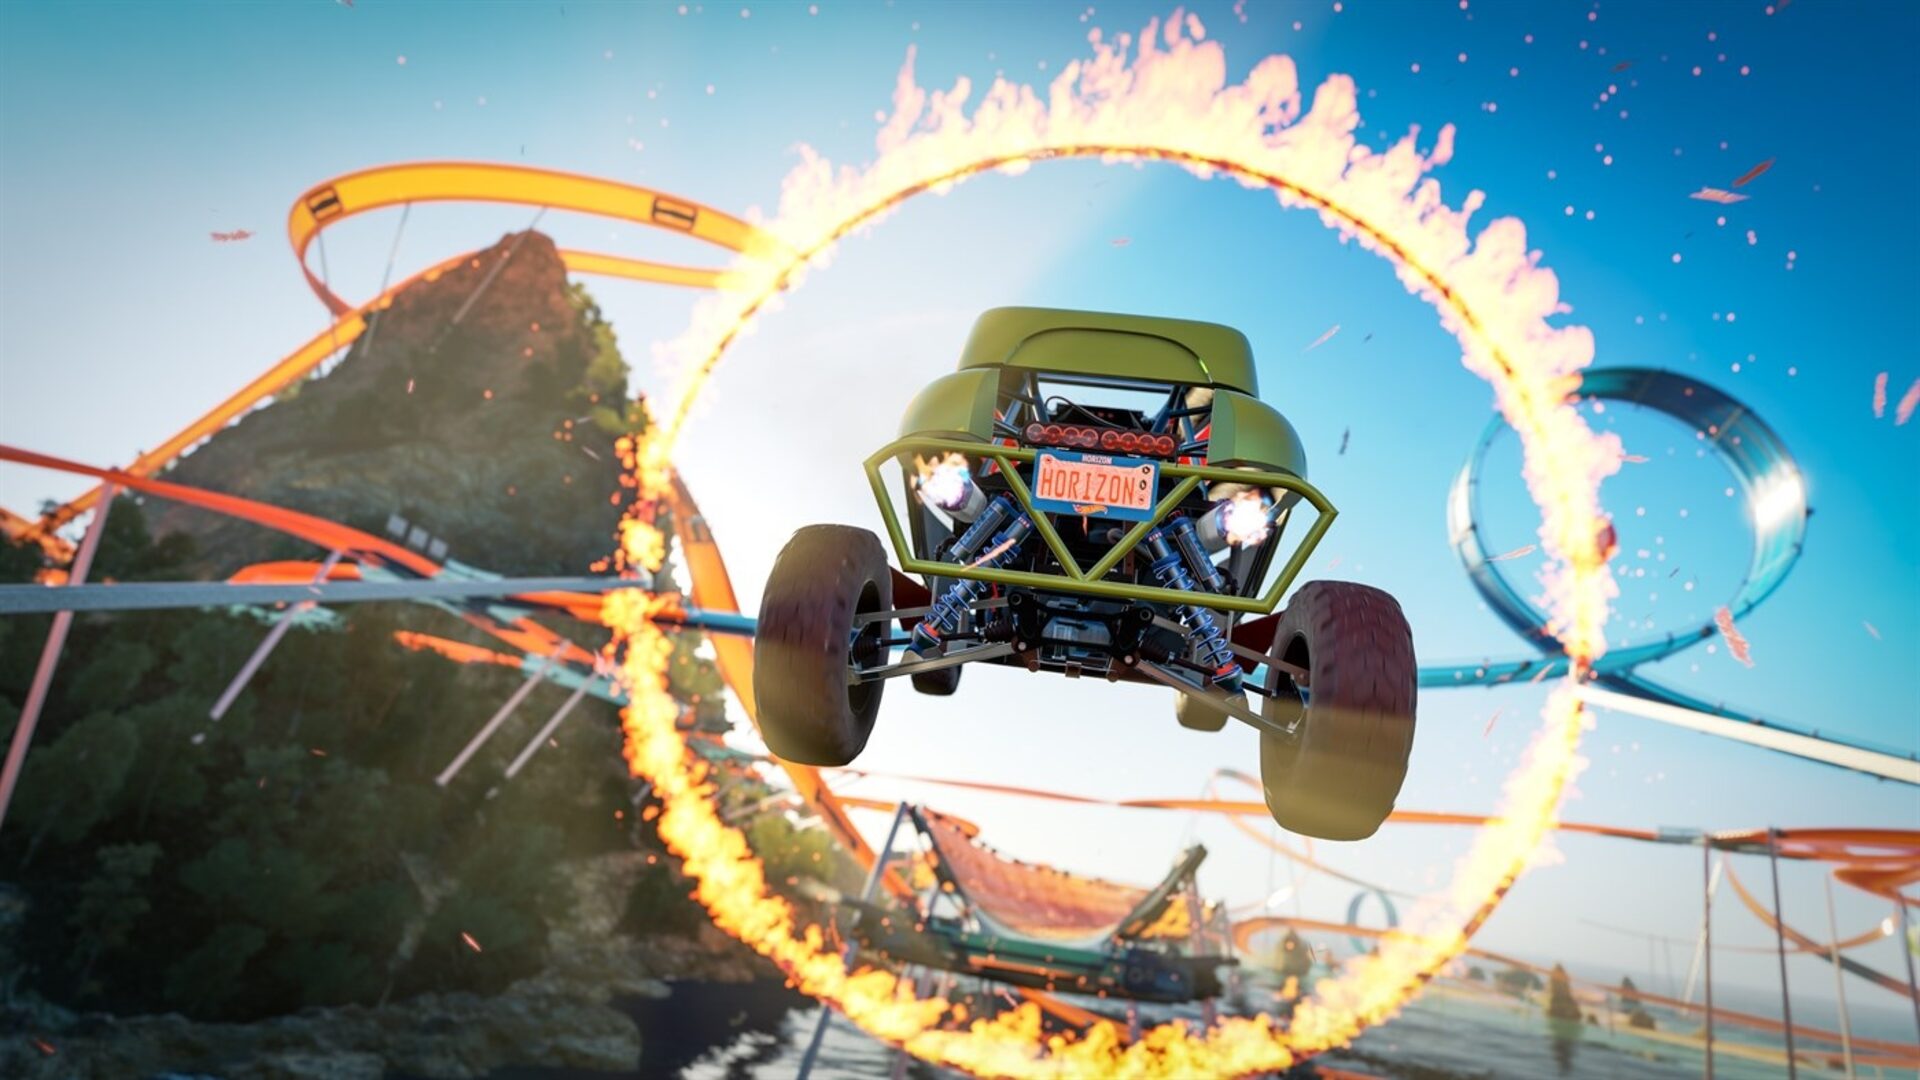 Forza Horizon 3 Com Dlc Hot Wheels Para Pc - Original - Others - DFG